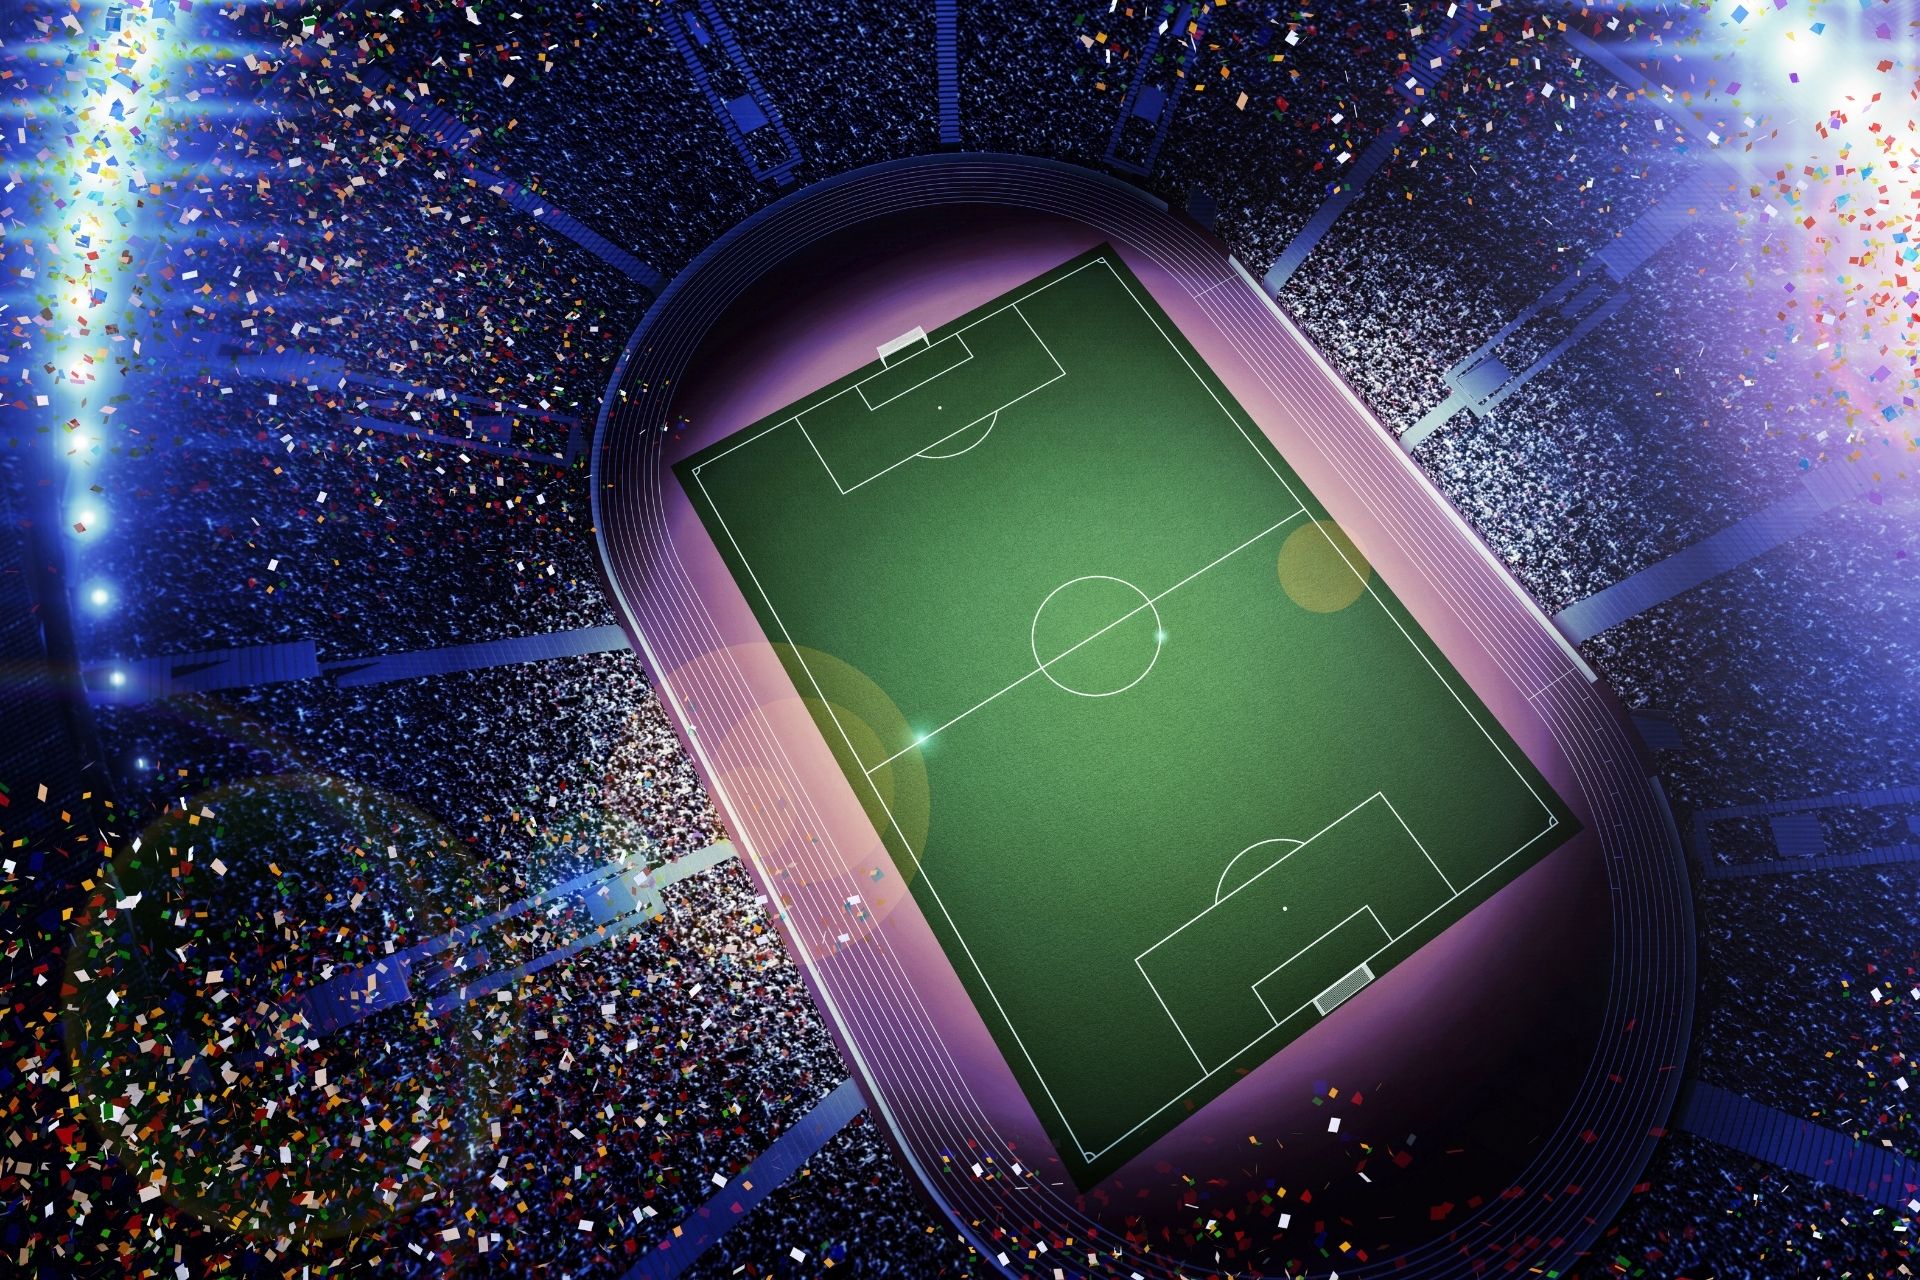 Dnia 2021-11-28 14:00 na obiekcie Etihad Stadium odbyło się spotkanie Manchester City vs West Ham - wynik 2-1